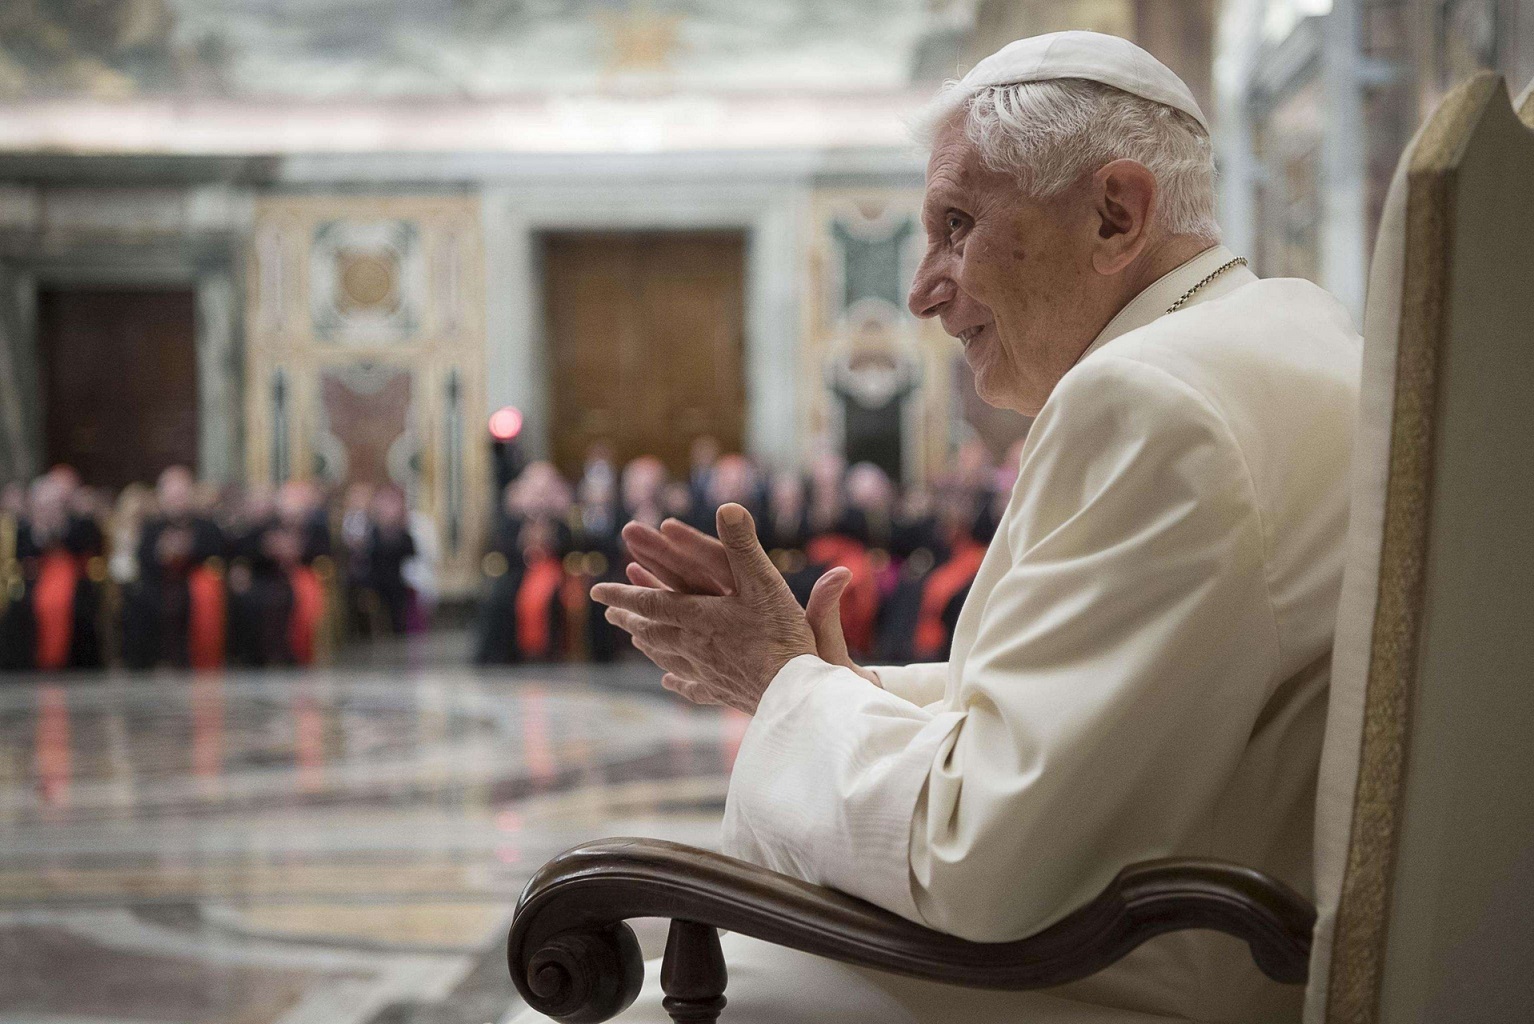 В Ватикане опровергают слухи о резком ухудшении состояния здоровья Бенедикта XVI